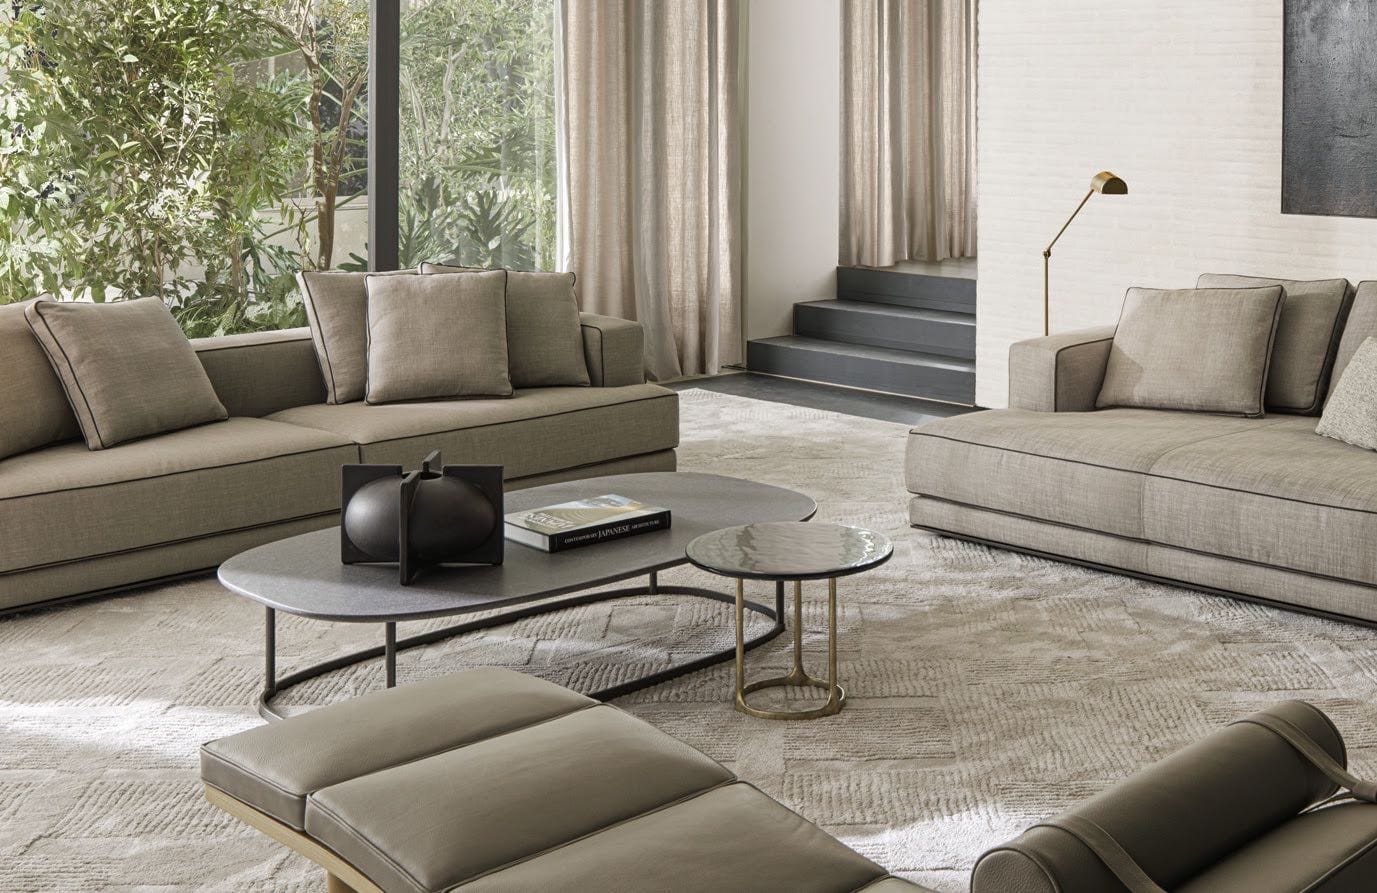 modern luxury living room in beige tones molteni&C